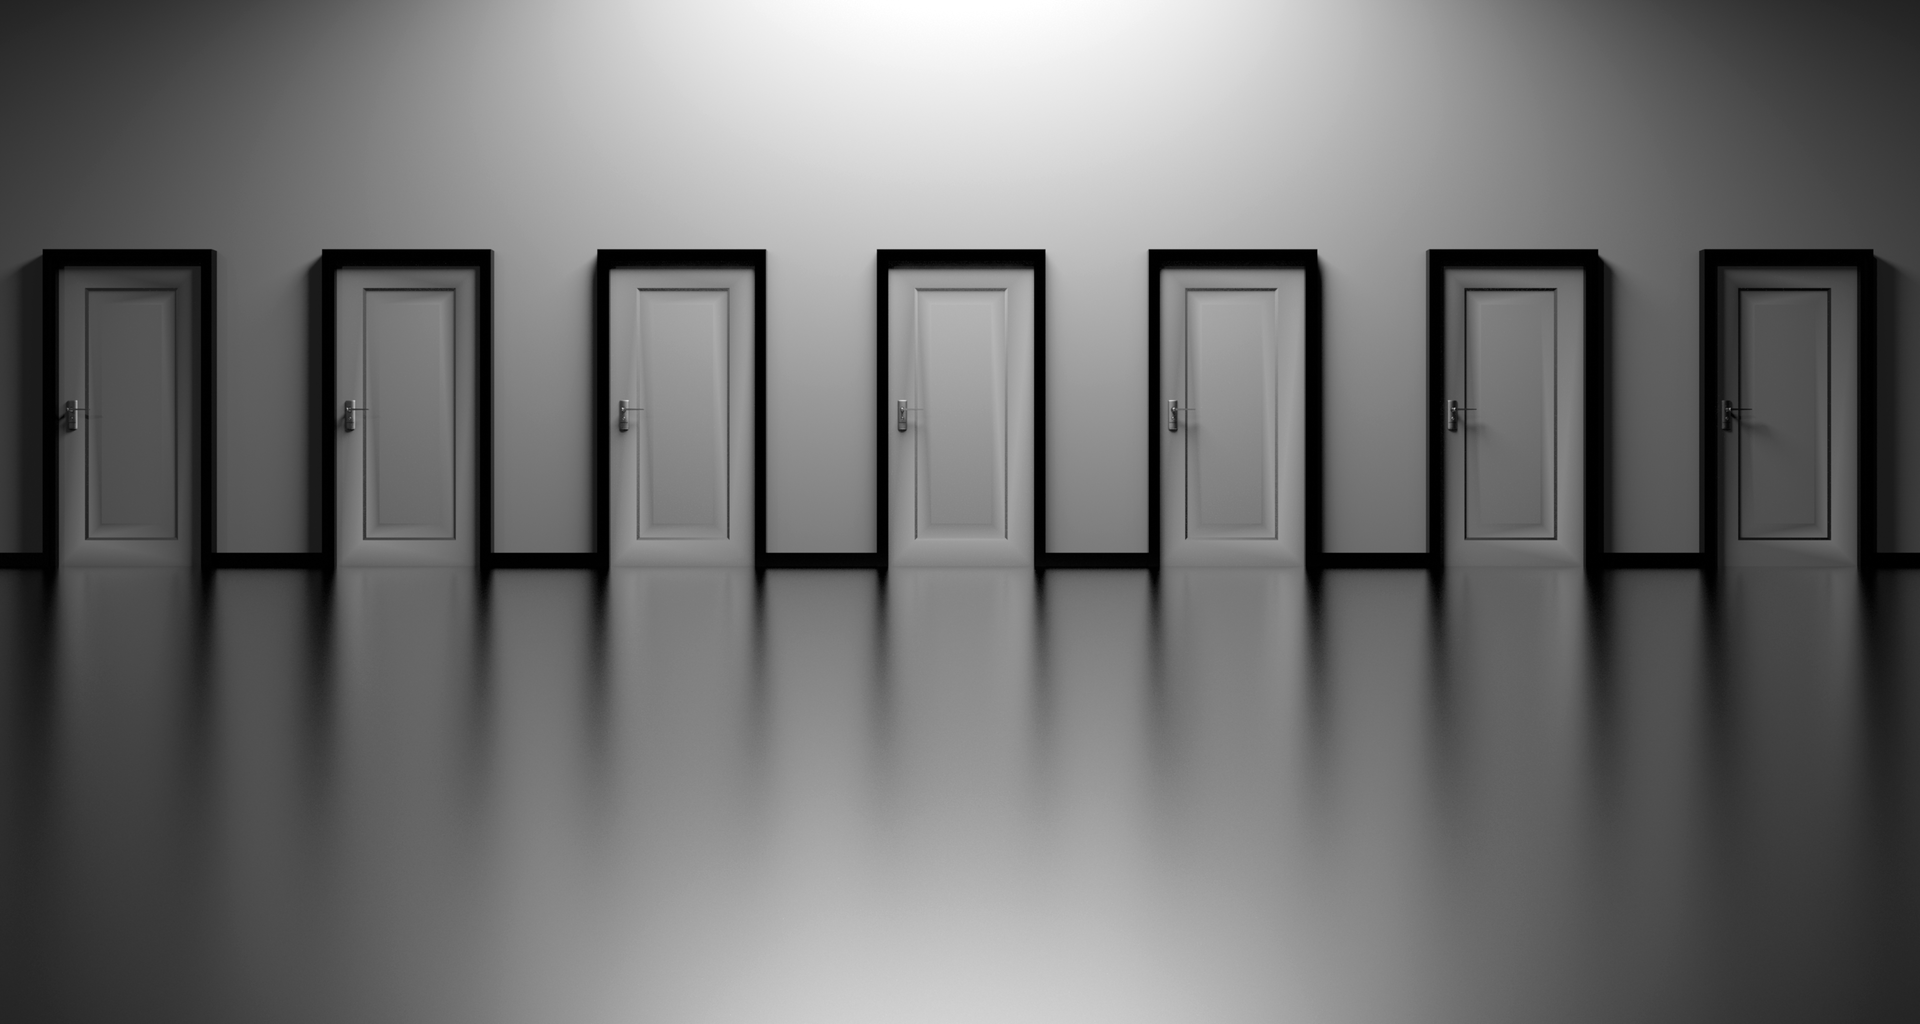 Many unopened doors to symbolise decision-making